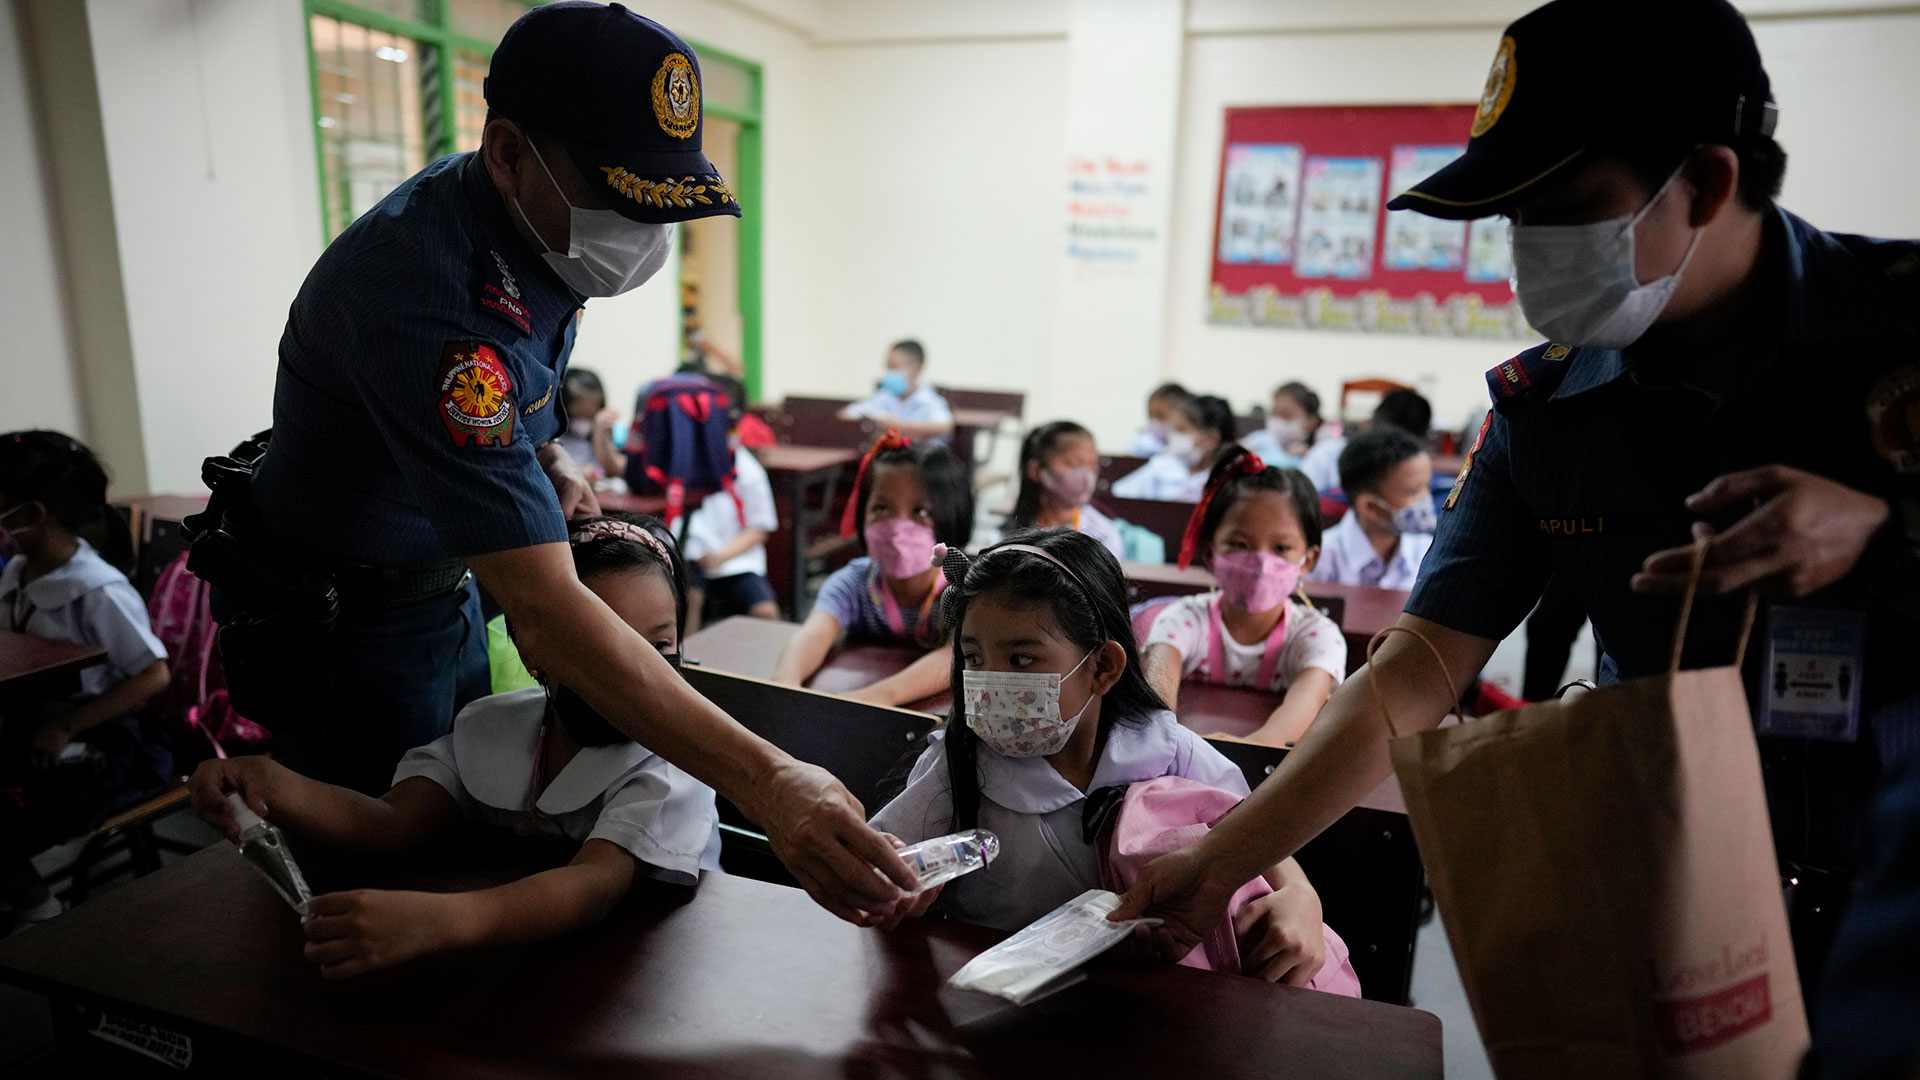 La policía distribuye alcohol y máscaras faciales a los estudiantes durante la apertura de clases en la Escuela Primaria San Juan en el área metropolitana de Manila, Filipinas, el lunes 22 de agosto de 2022.  (Foto AP/Aarón Favila)

